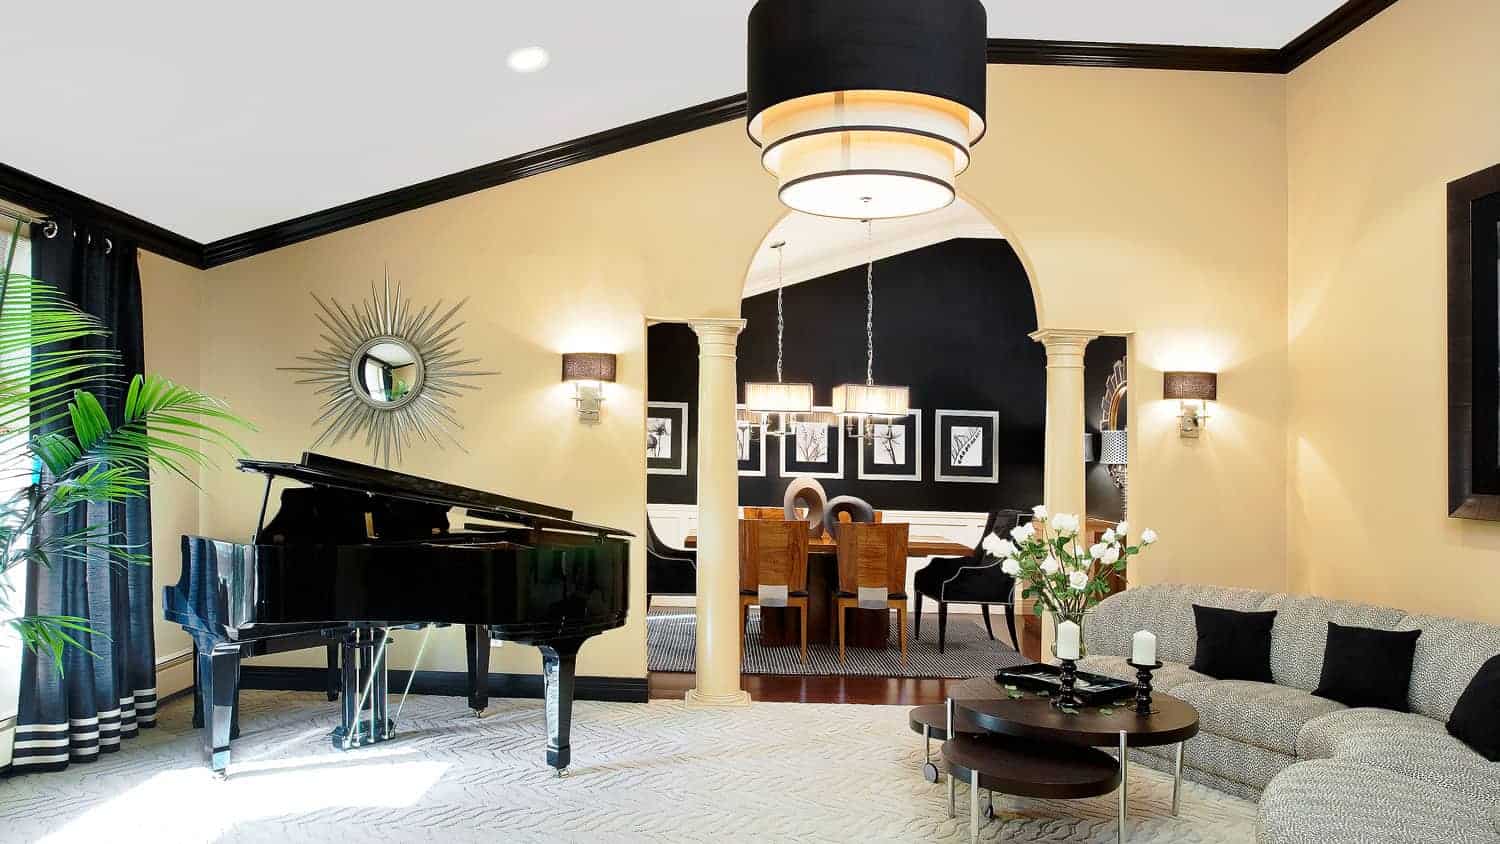 Dramatic living room designed around an ebony black baby grand piano, Dix Hills NY